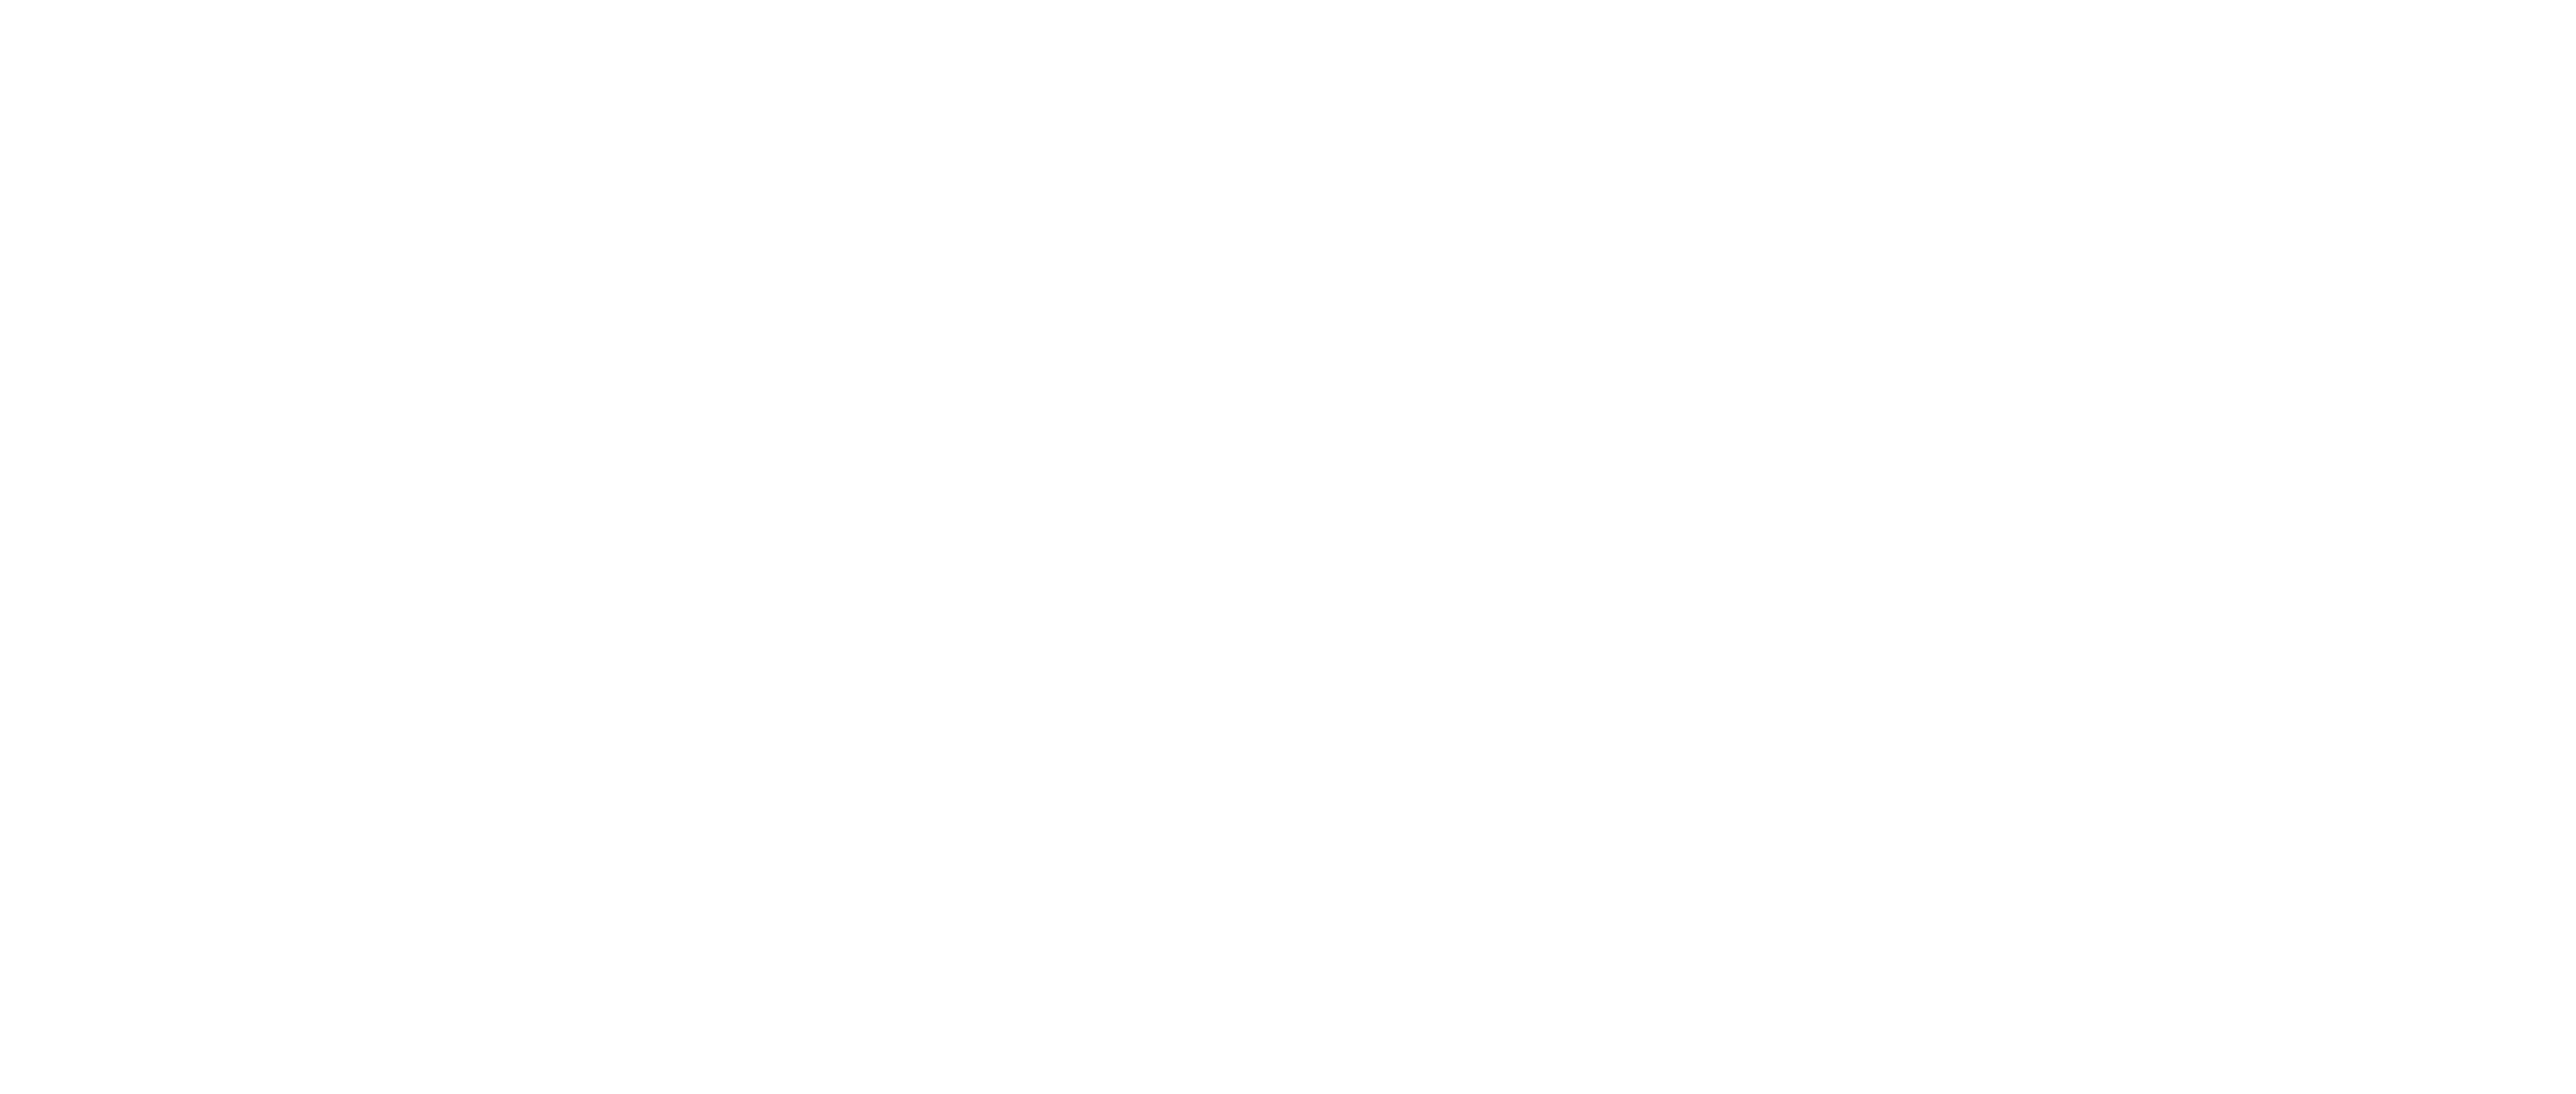 KGT Logo